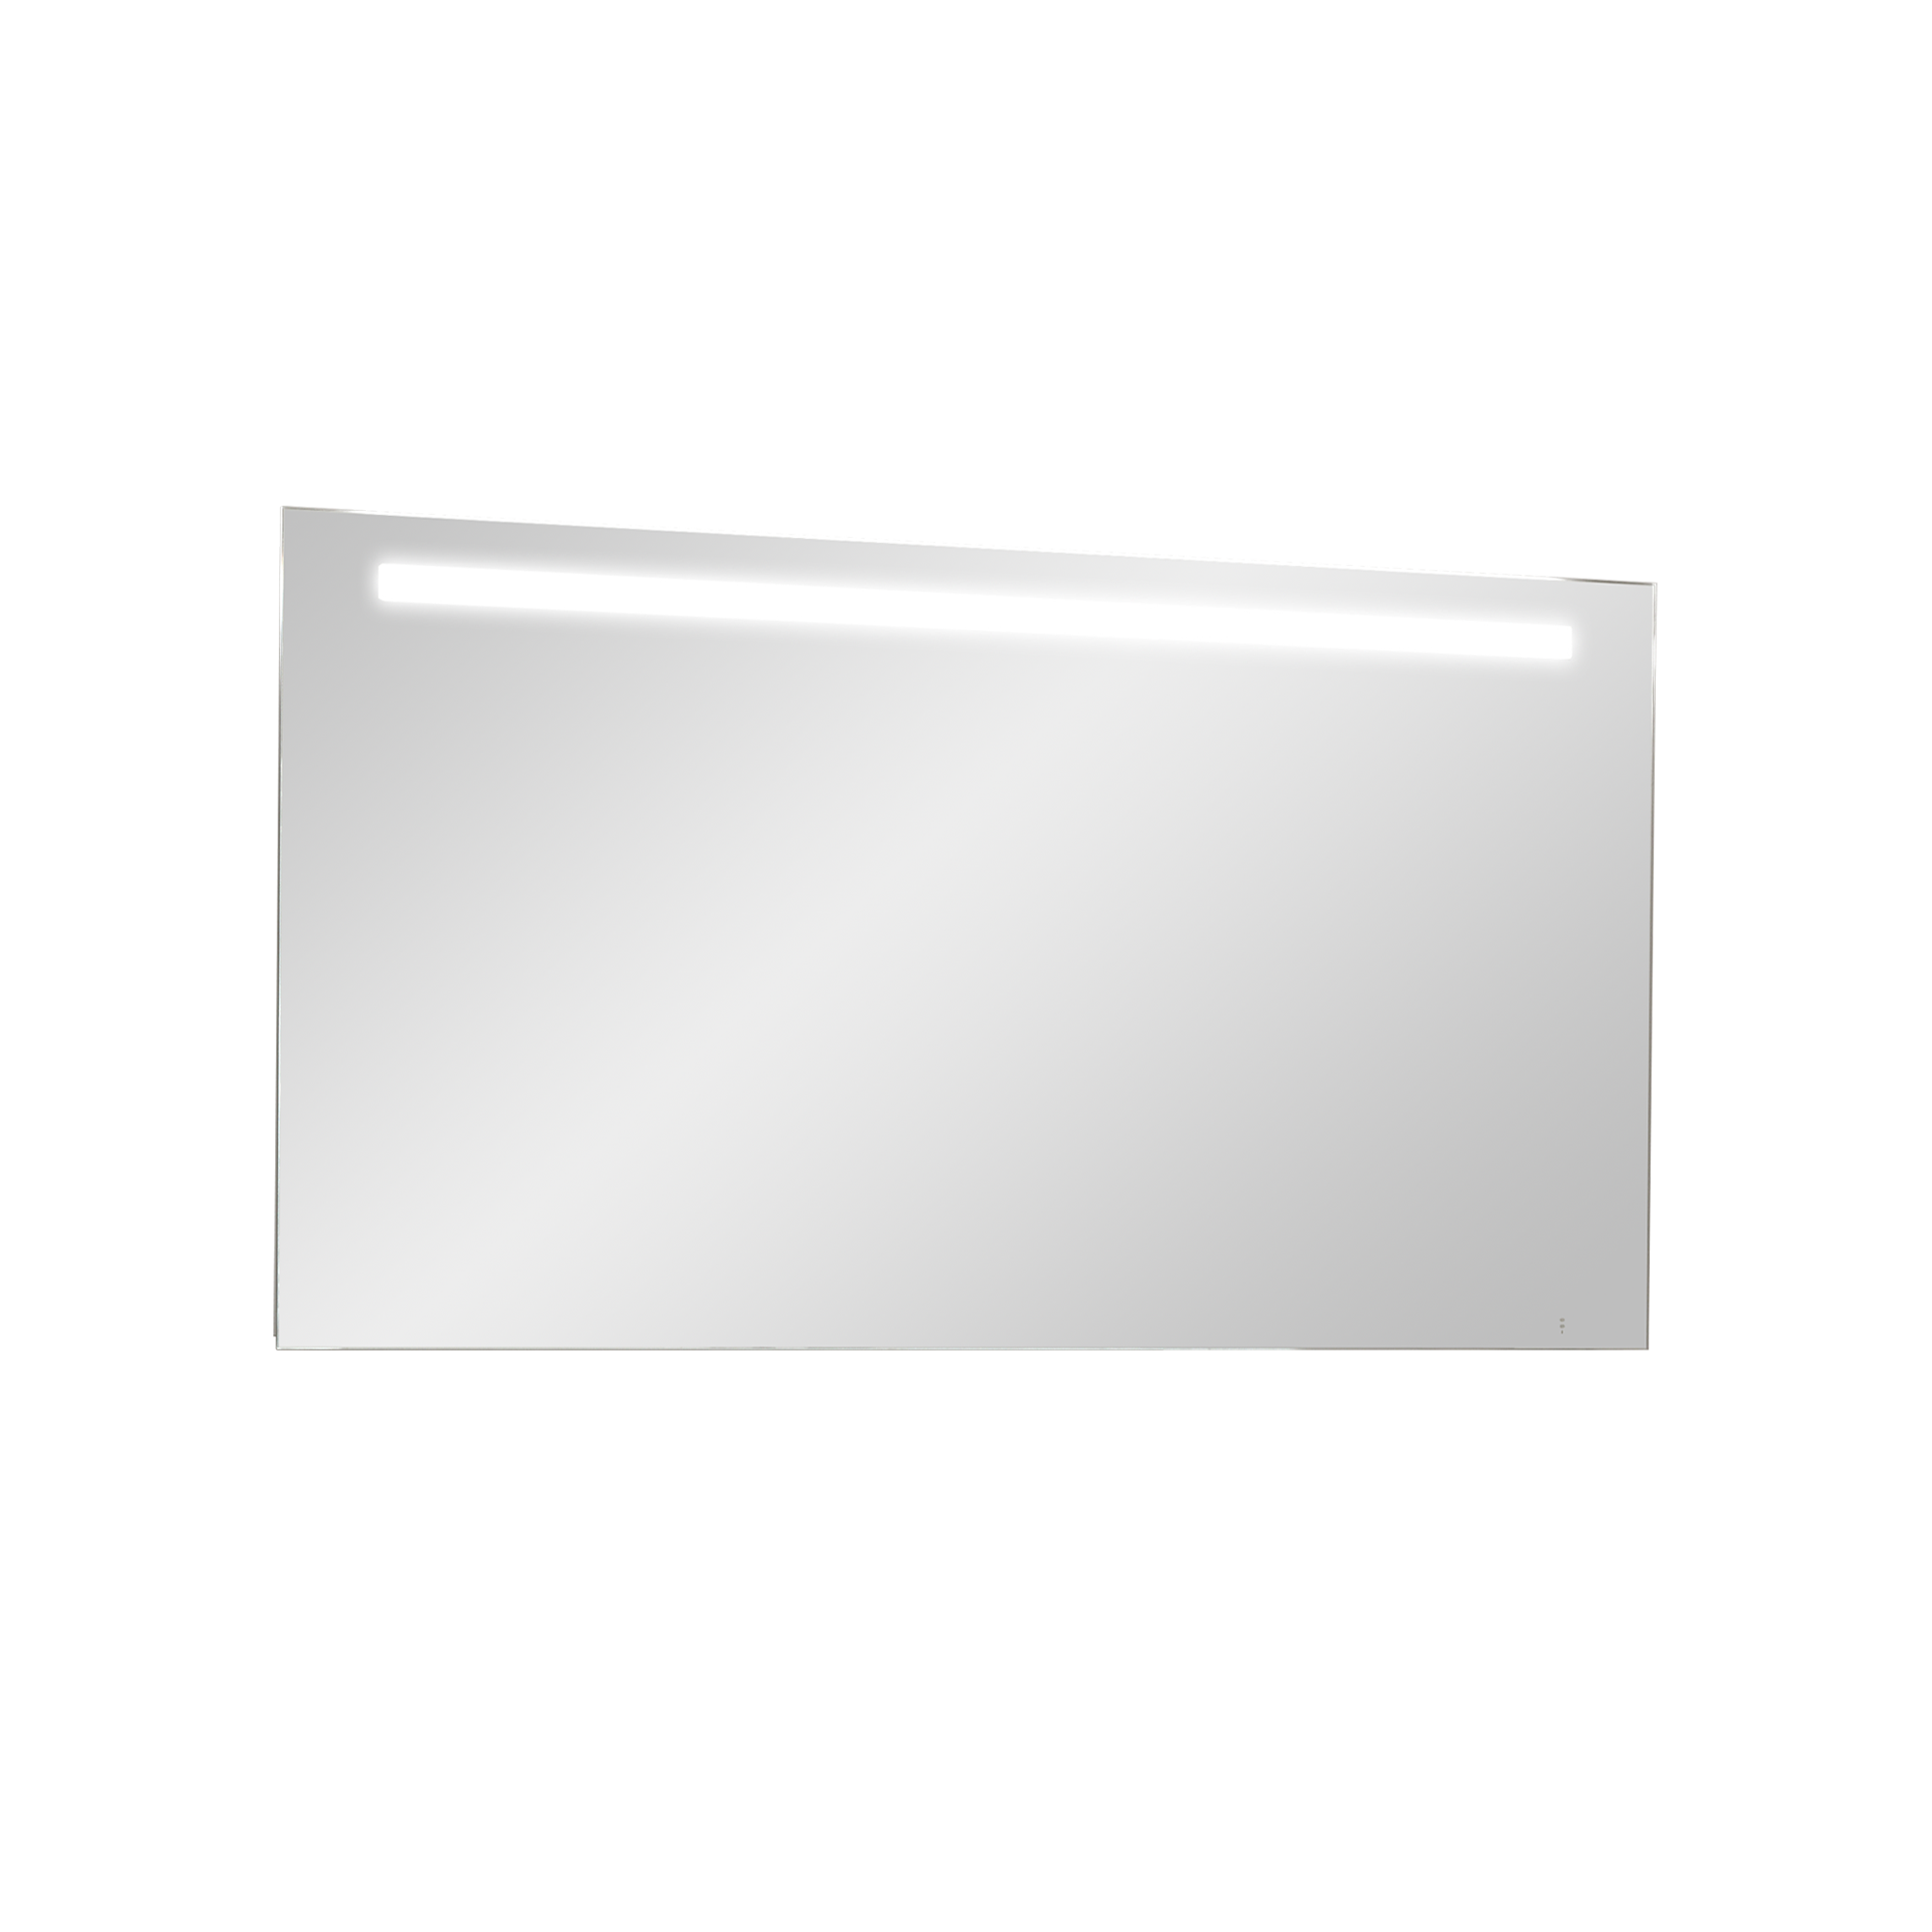 Storke Lucio rechthoekig badkamerspiegel 130 x 65 cm met spiegelverlichting en -verwarming